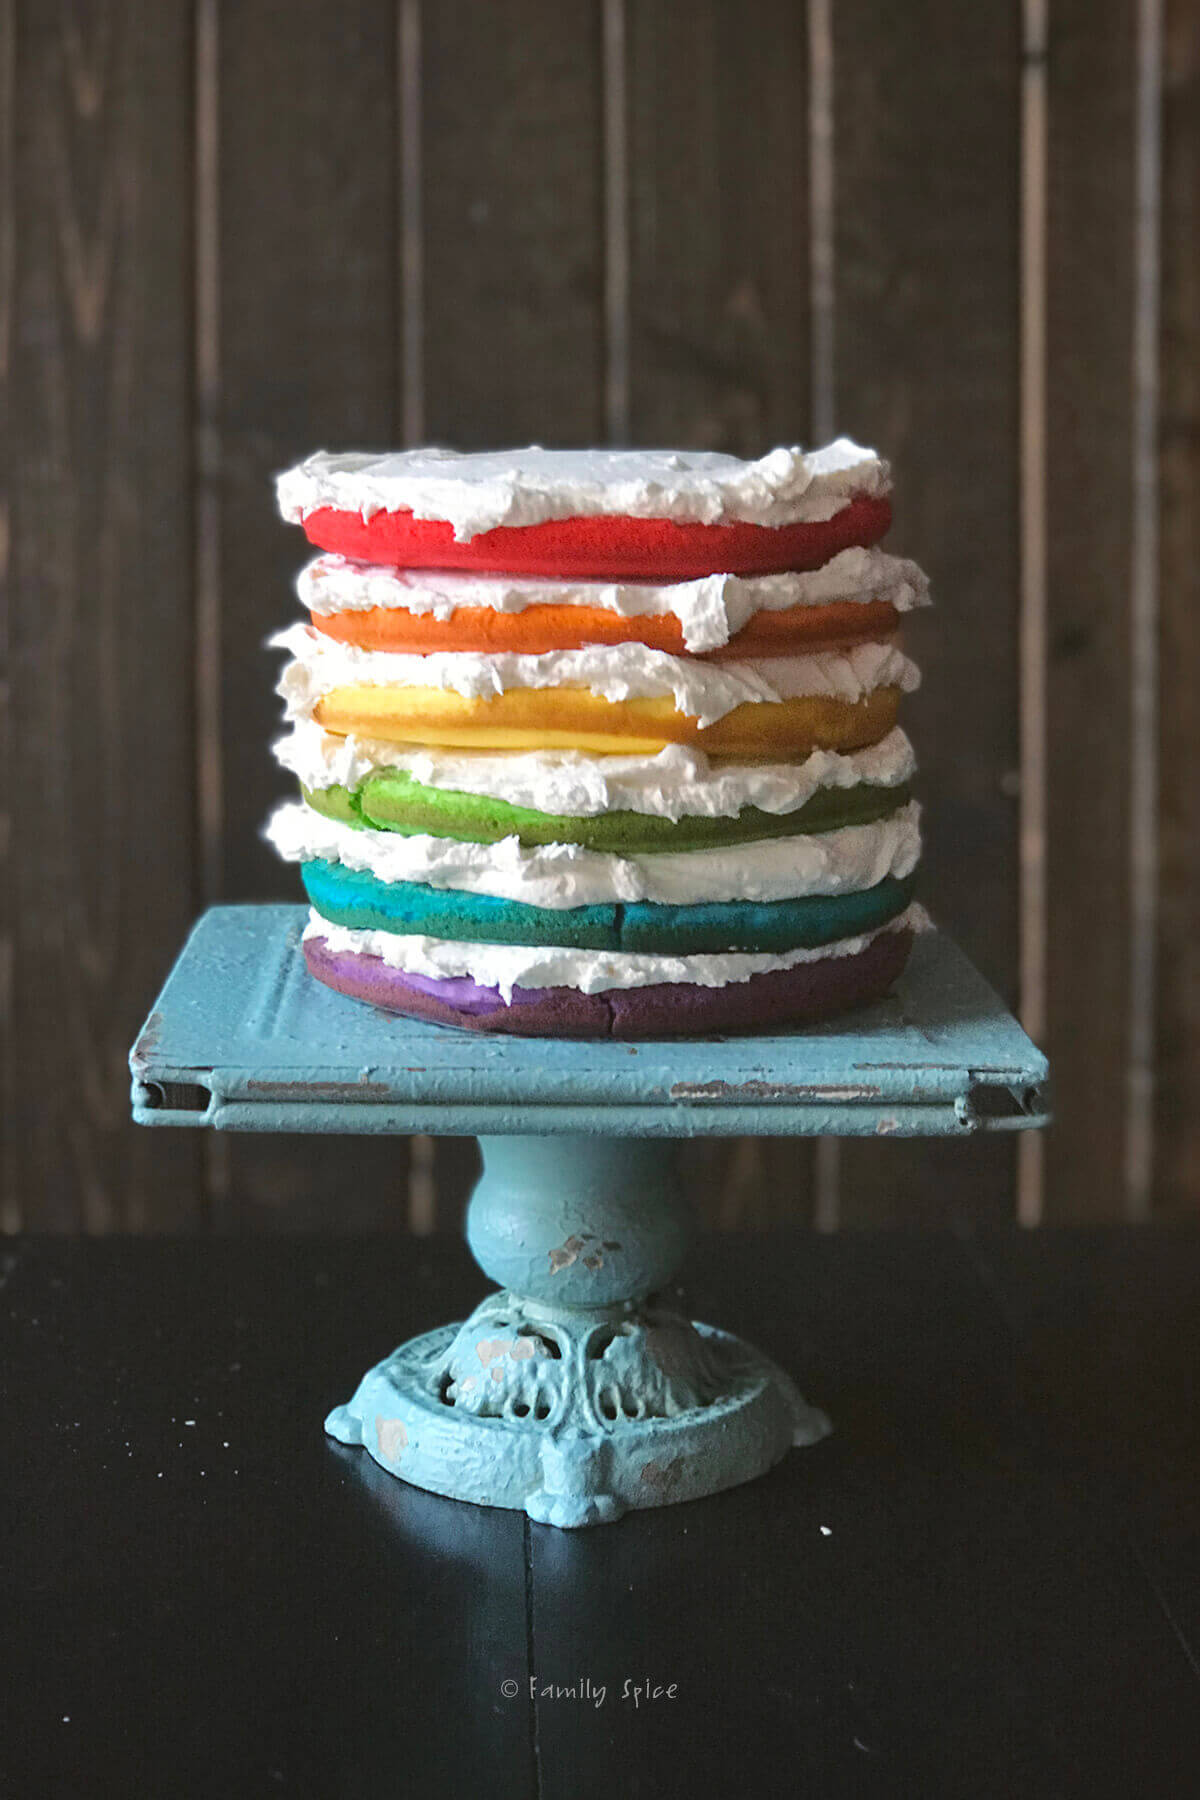 Six rainbow layers make up the base of the unicorn cake